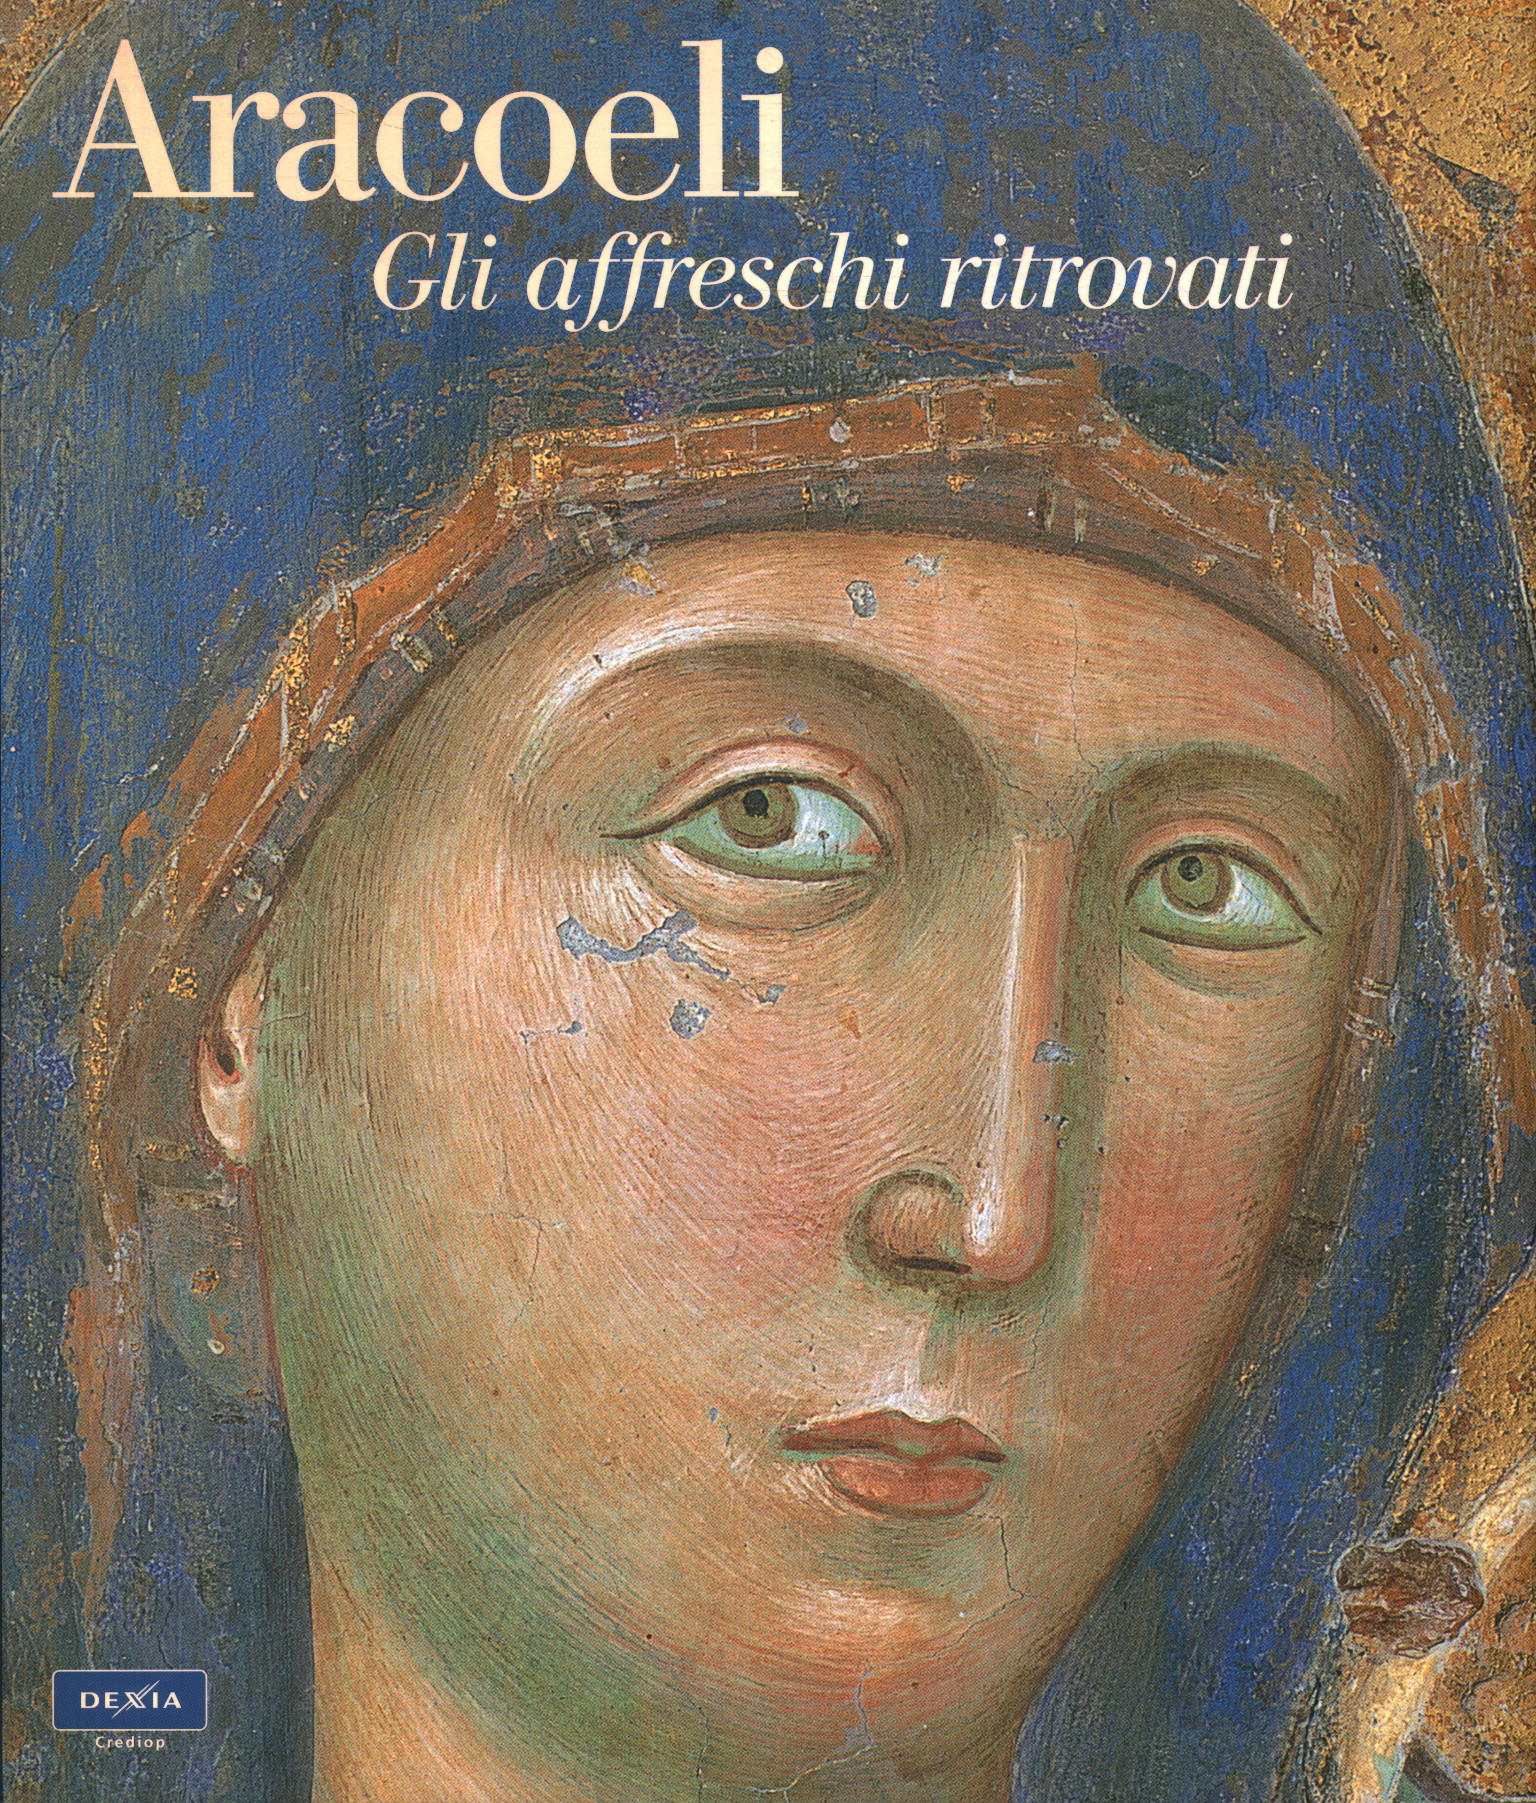 Aracoeli. The frescoes found